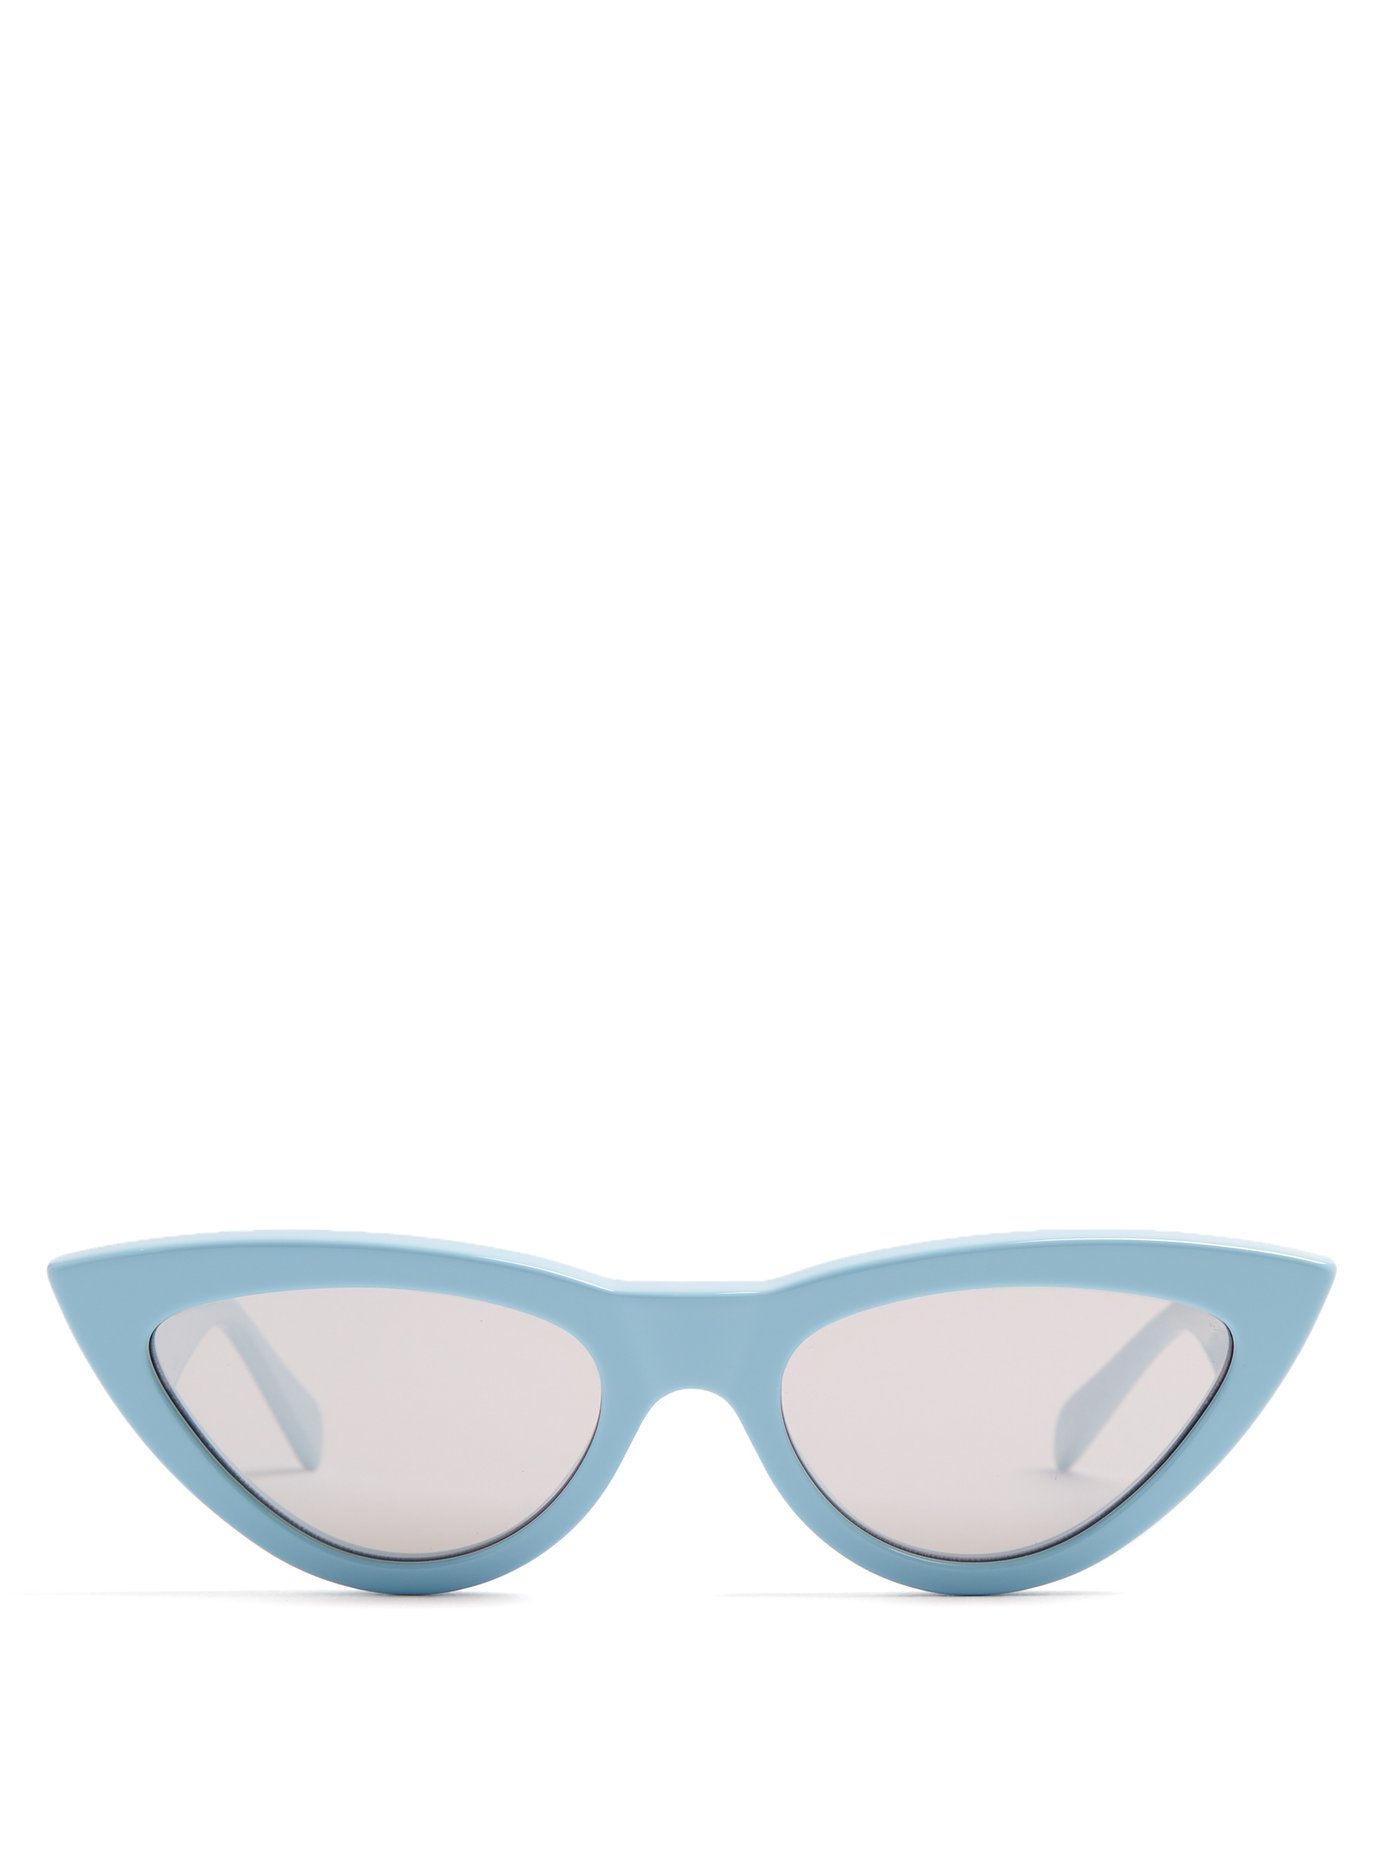 celine turquoise sunglasses